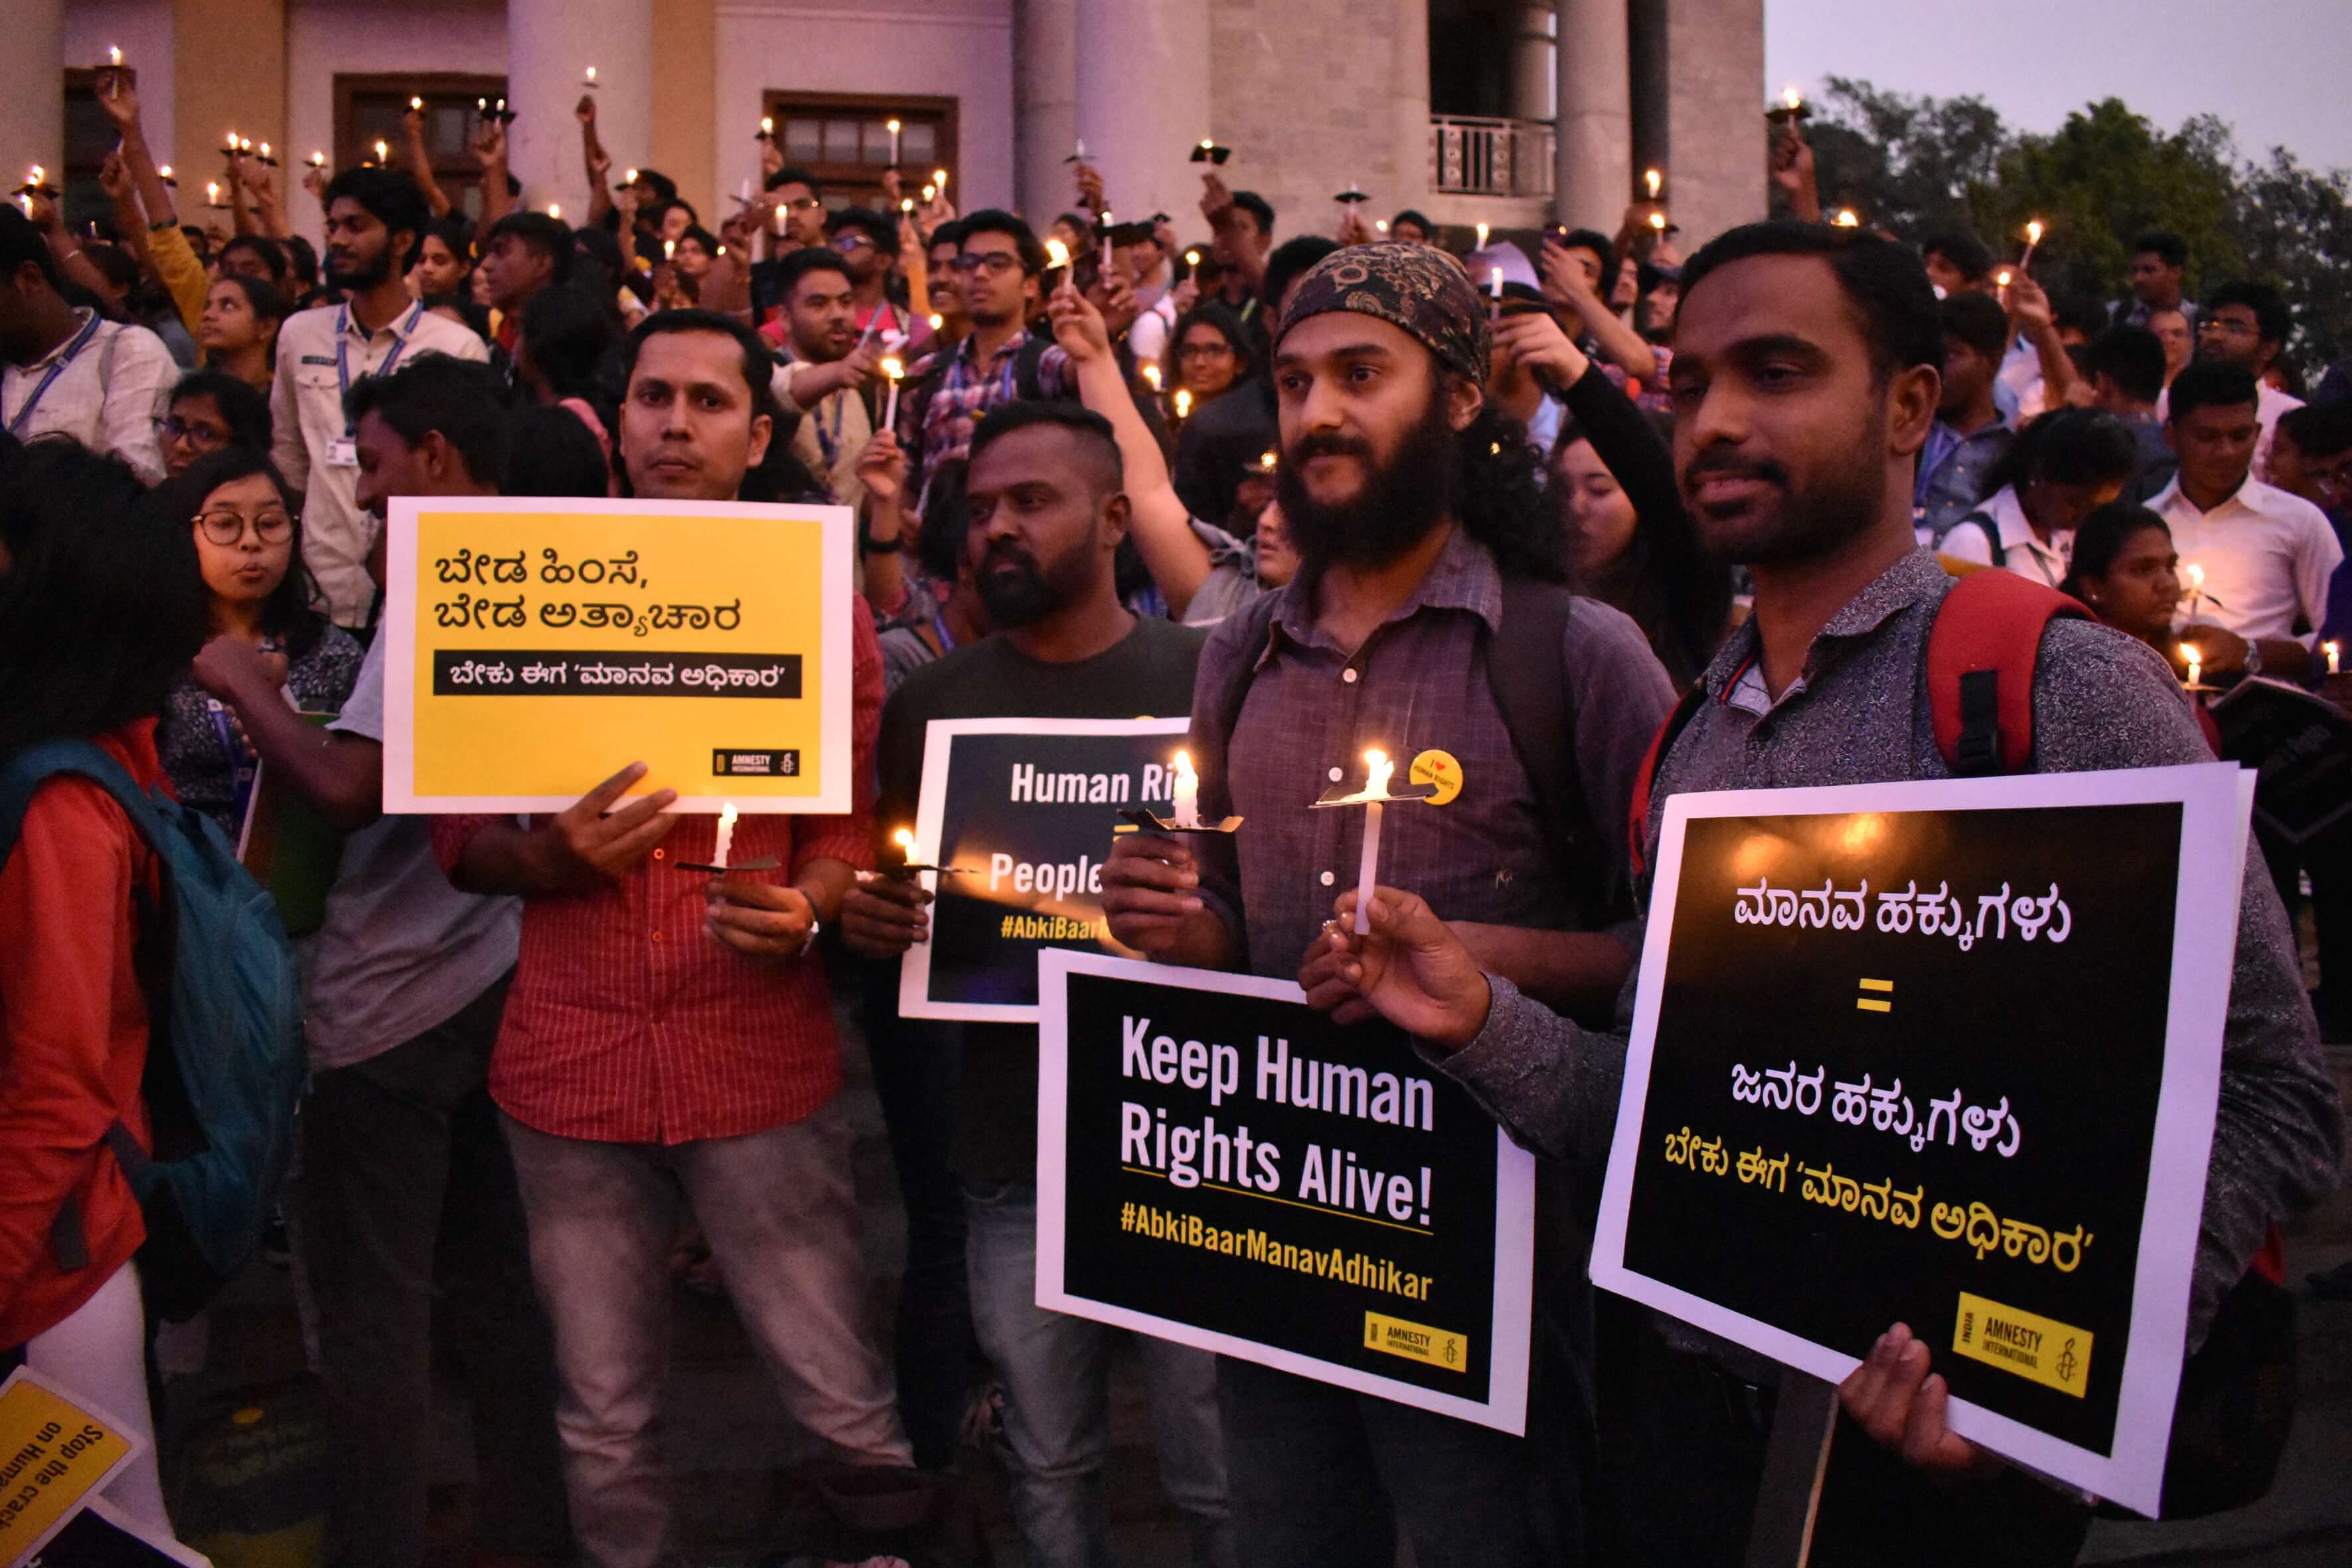 Marche pour les droits de l'homme à Bangalore, en Inde, le 10 décembre 2018. #AbkibaarManavAdhikar. Des membres et des sympathisants d'Amnesty International défilent dans le centre de Bangalore pour marquer la Journée internationale des droits de l'homme le 10 décembre 2018